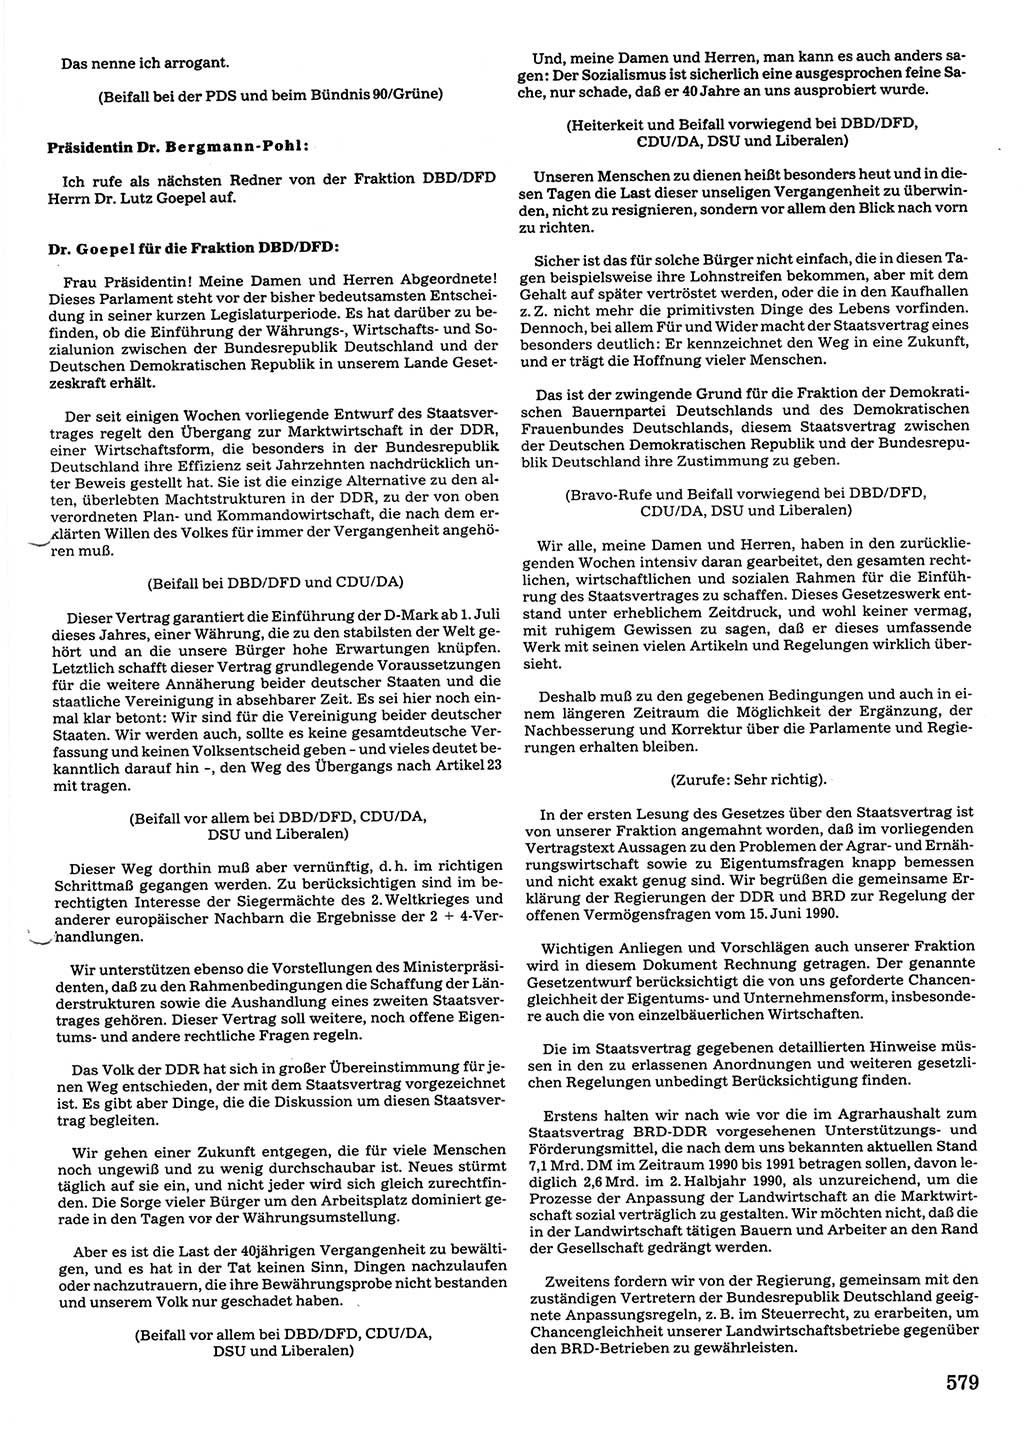 Tagungen der Volkskammer (VK) der Deutschen Demokratischen Republik (DDR), 10. Wahlperiode 1990, Seite 579 (VK. DDR 10. WP. 1990, Prot. Tg. 1-38, 5.4.-2.10.1990, S. 579)